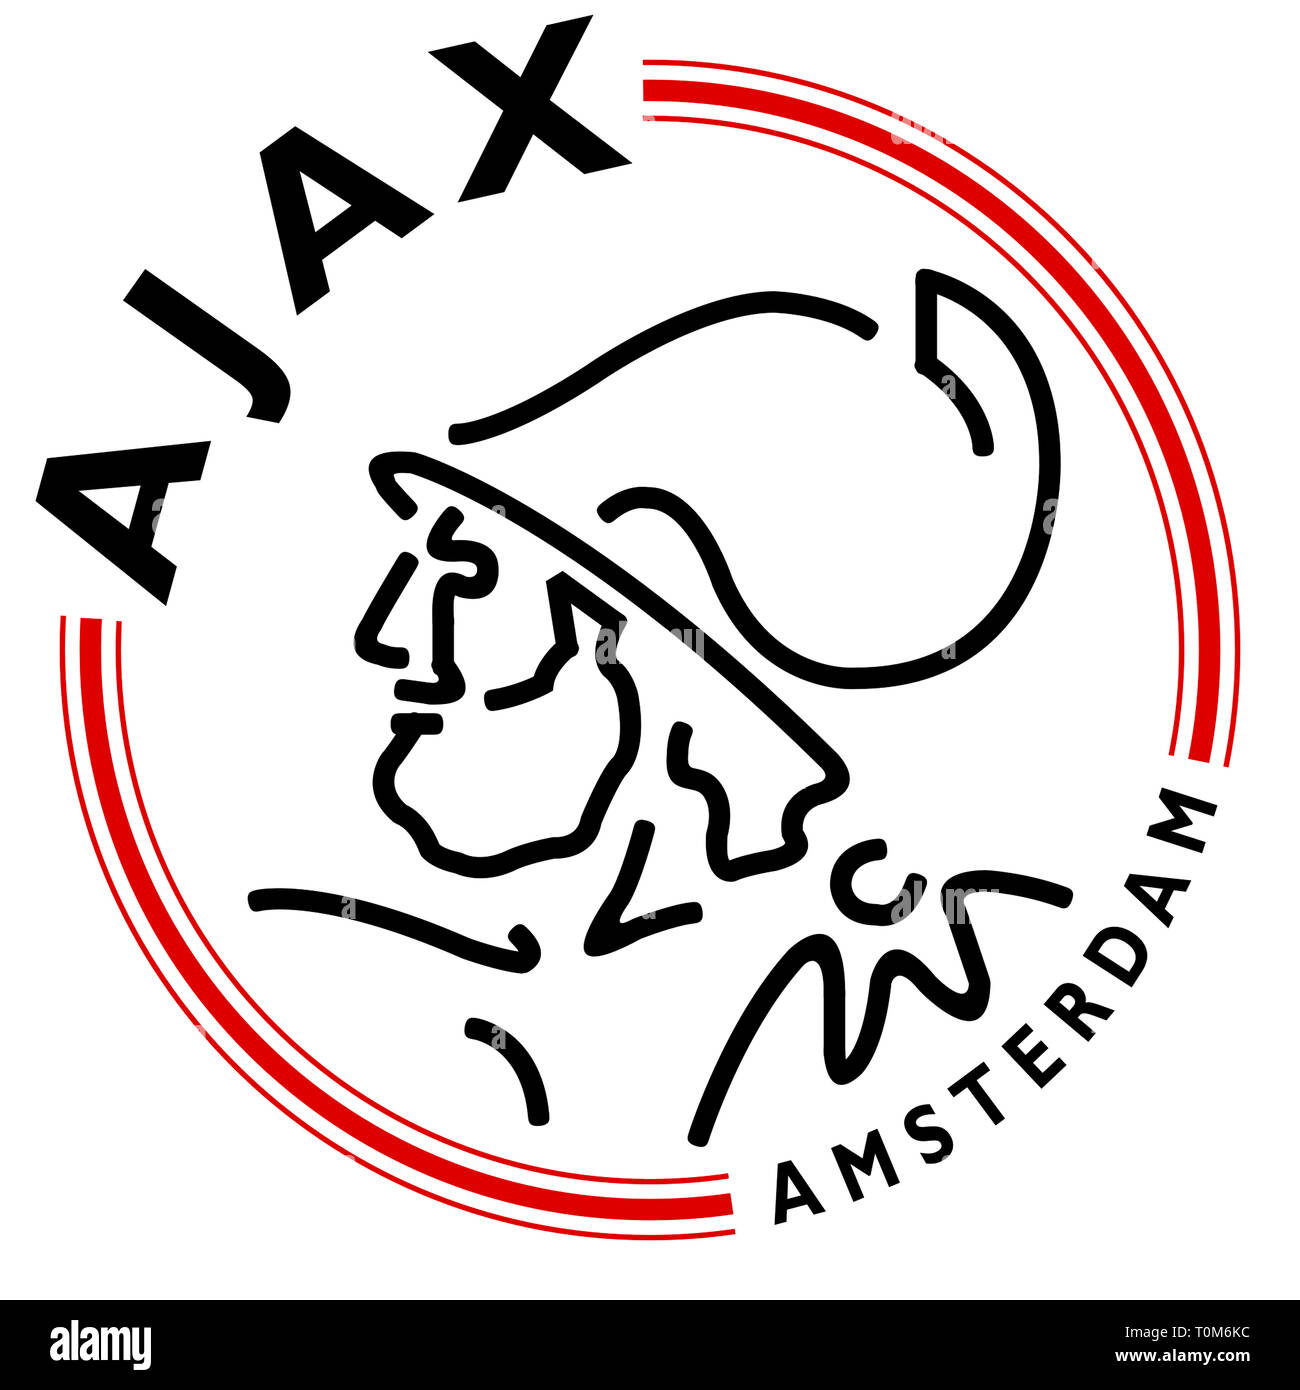 Logo de l'équipe néerlandaise de football Ajax Amsterdam - Pays-Bas. Banque D'Images